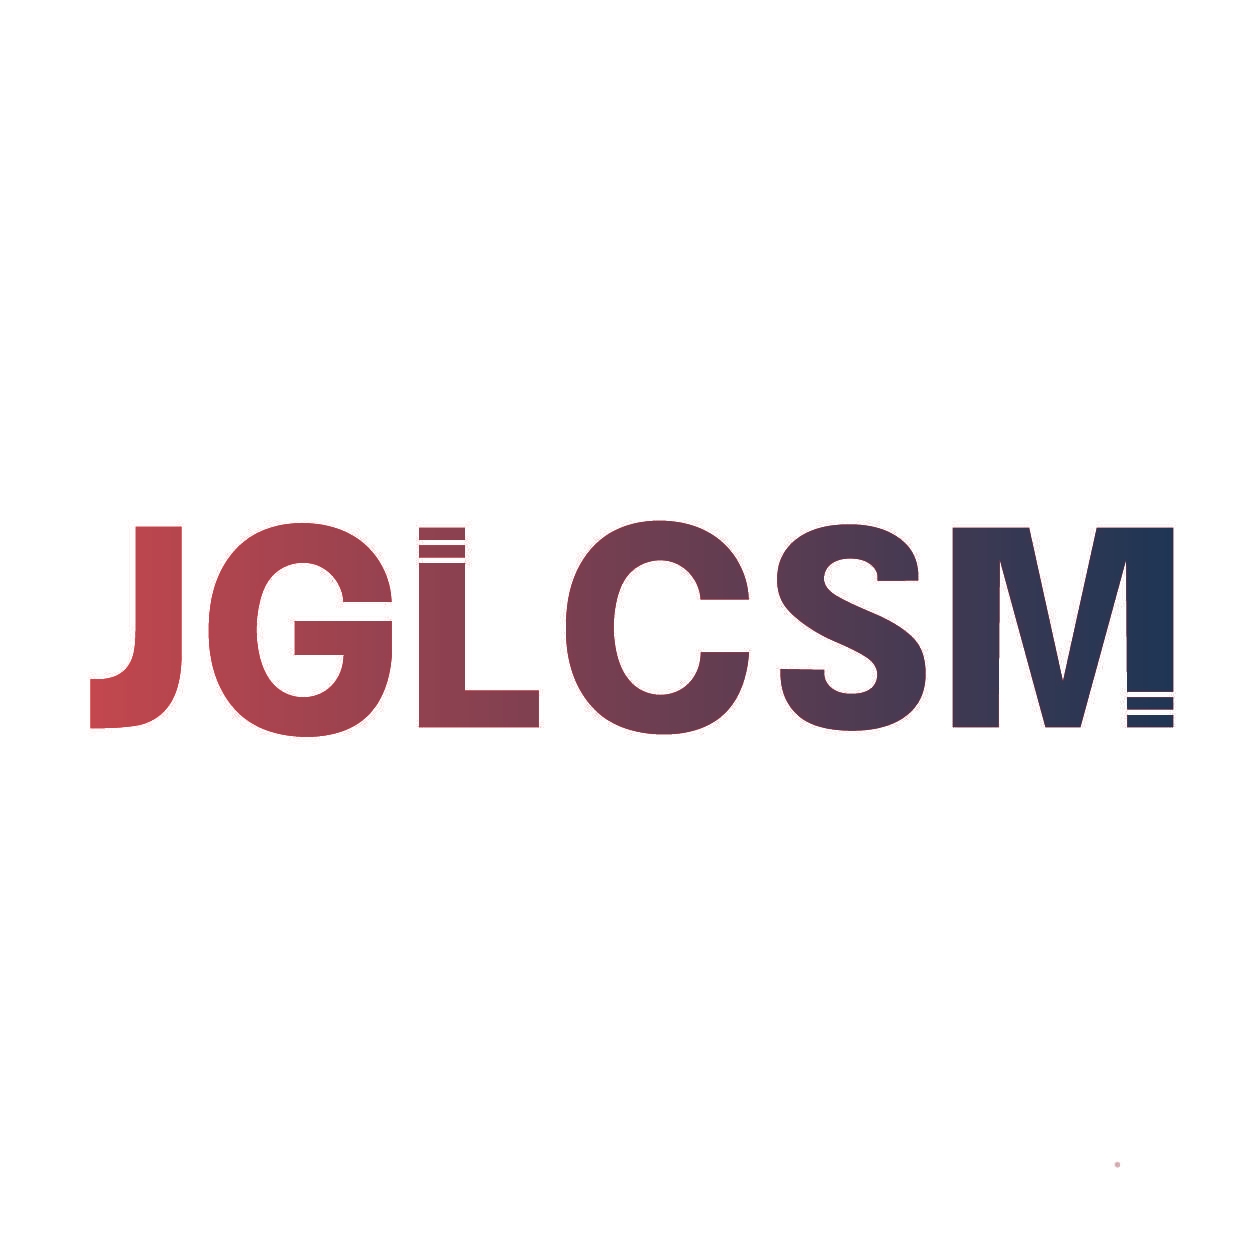 JGLCSM